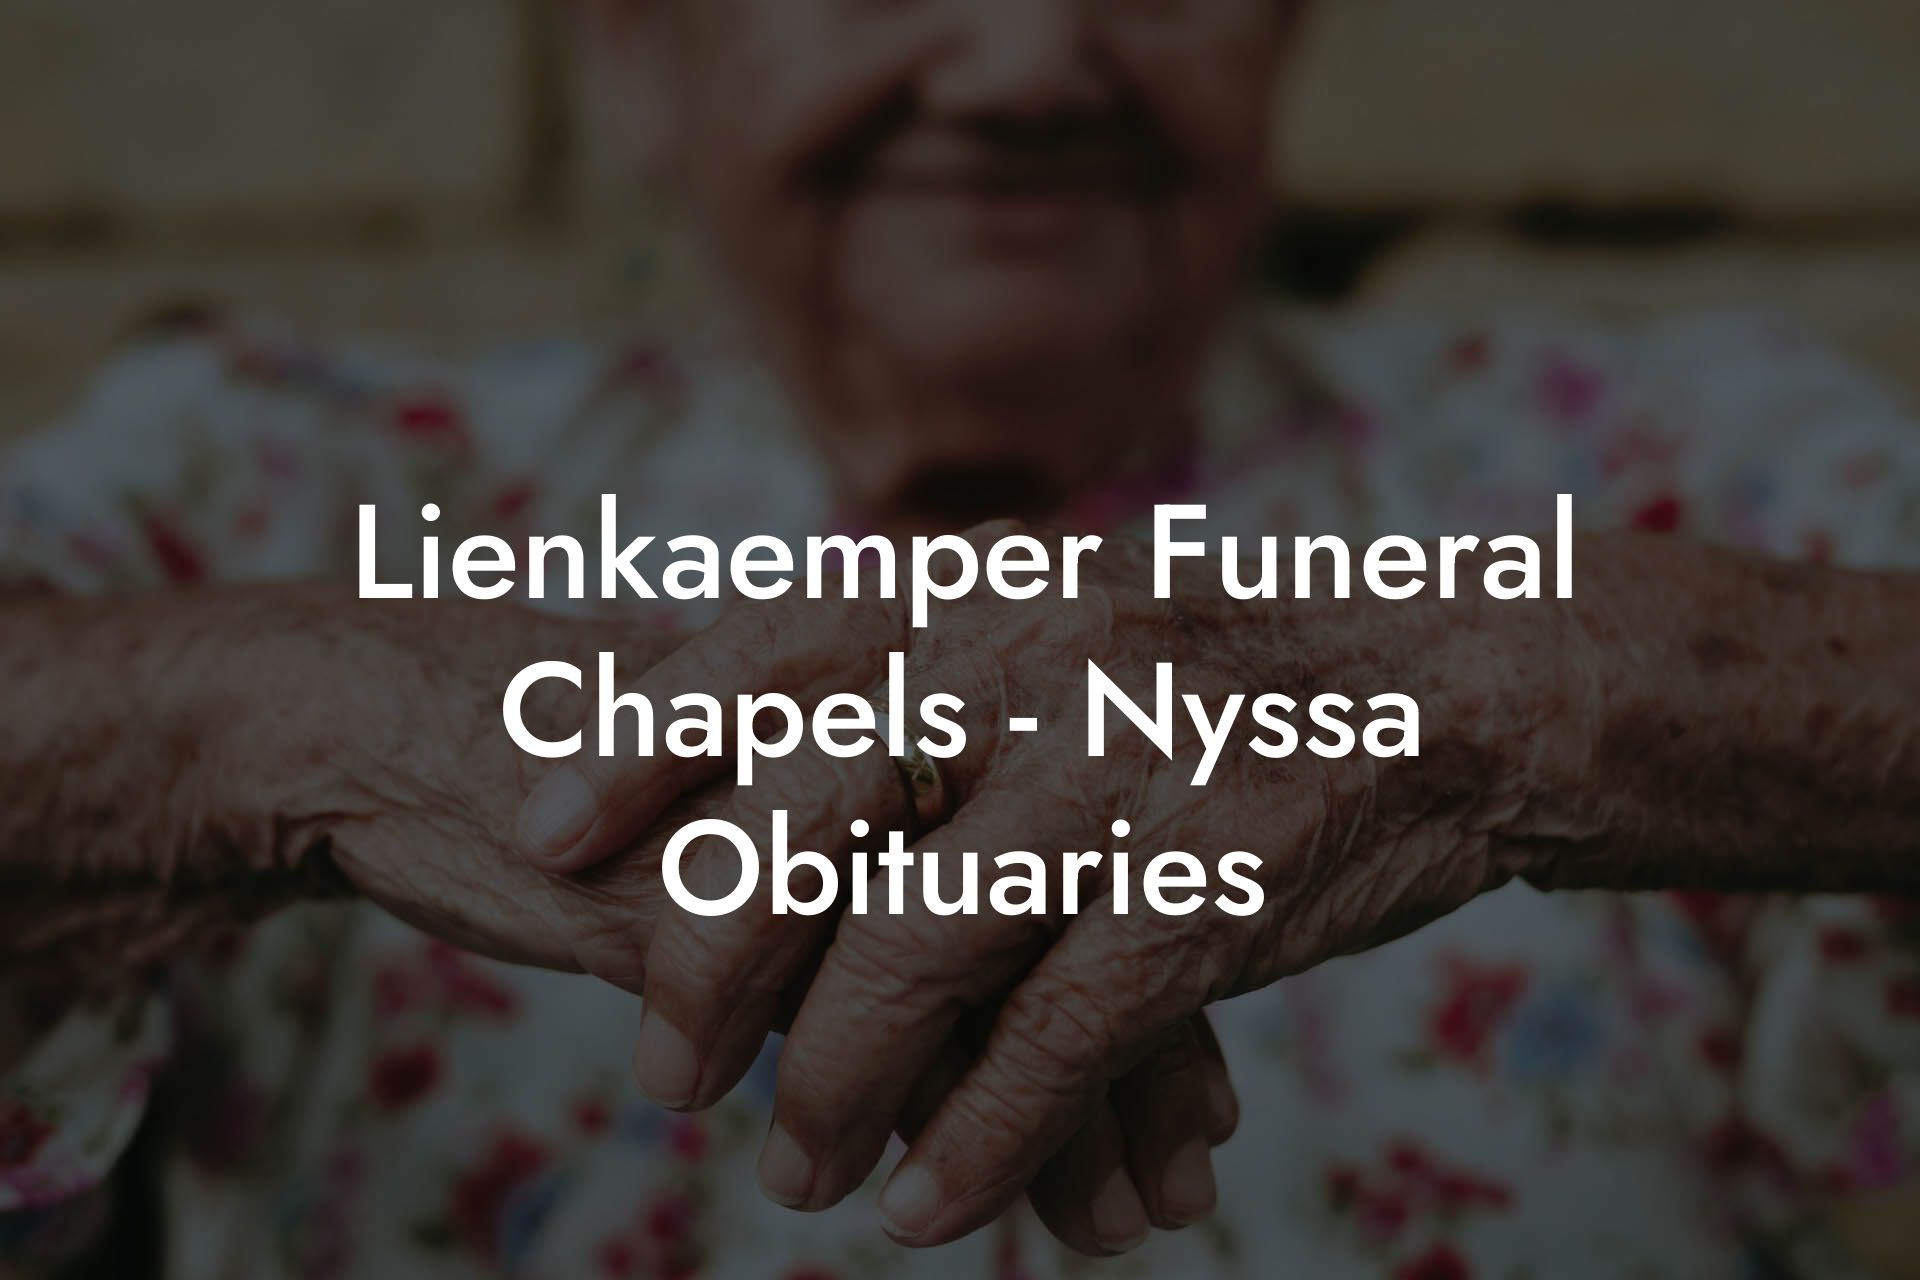 Lienkaemper Funeral Chapels - Nyssa Obituaries